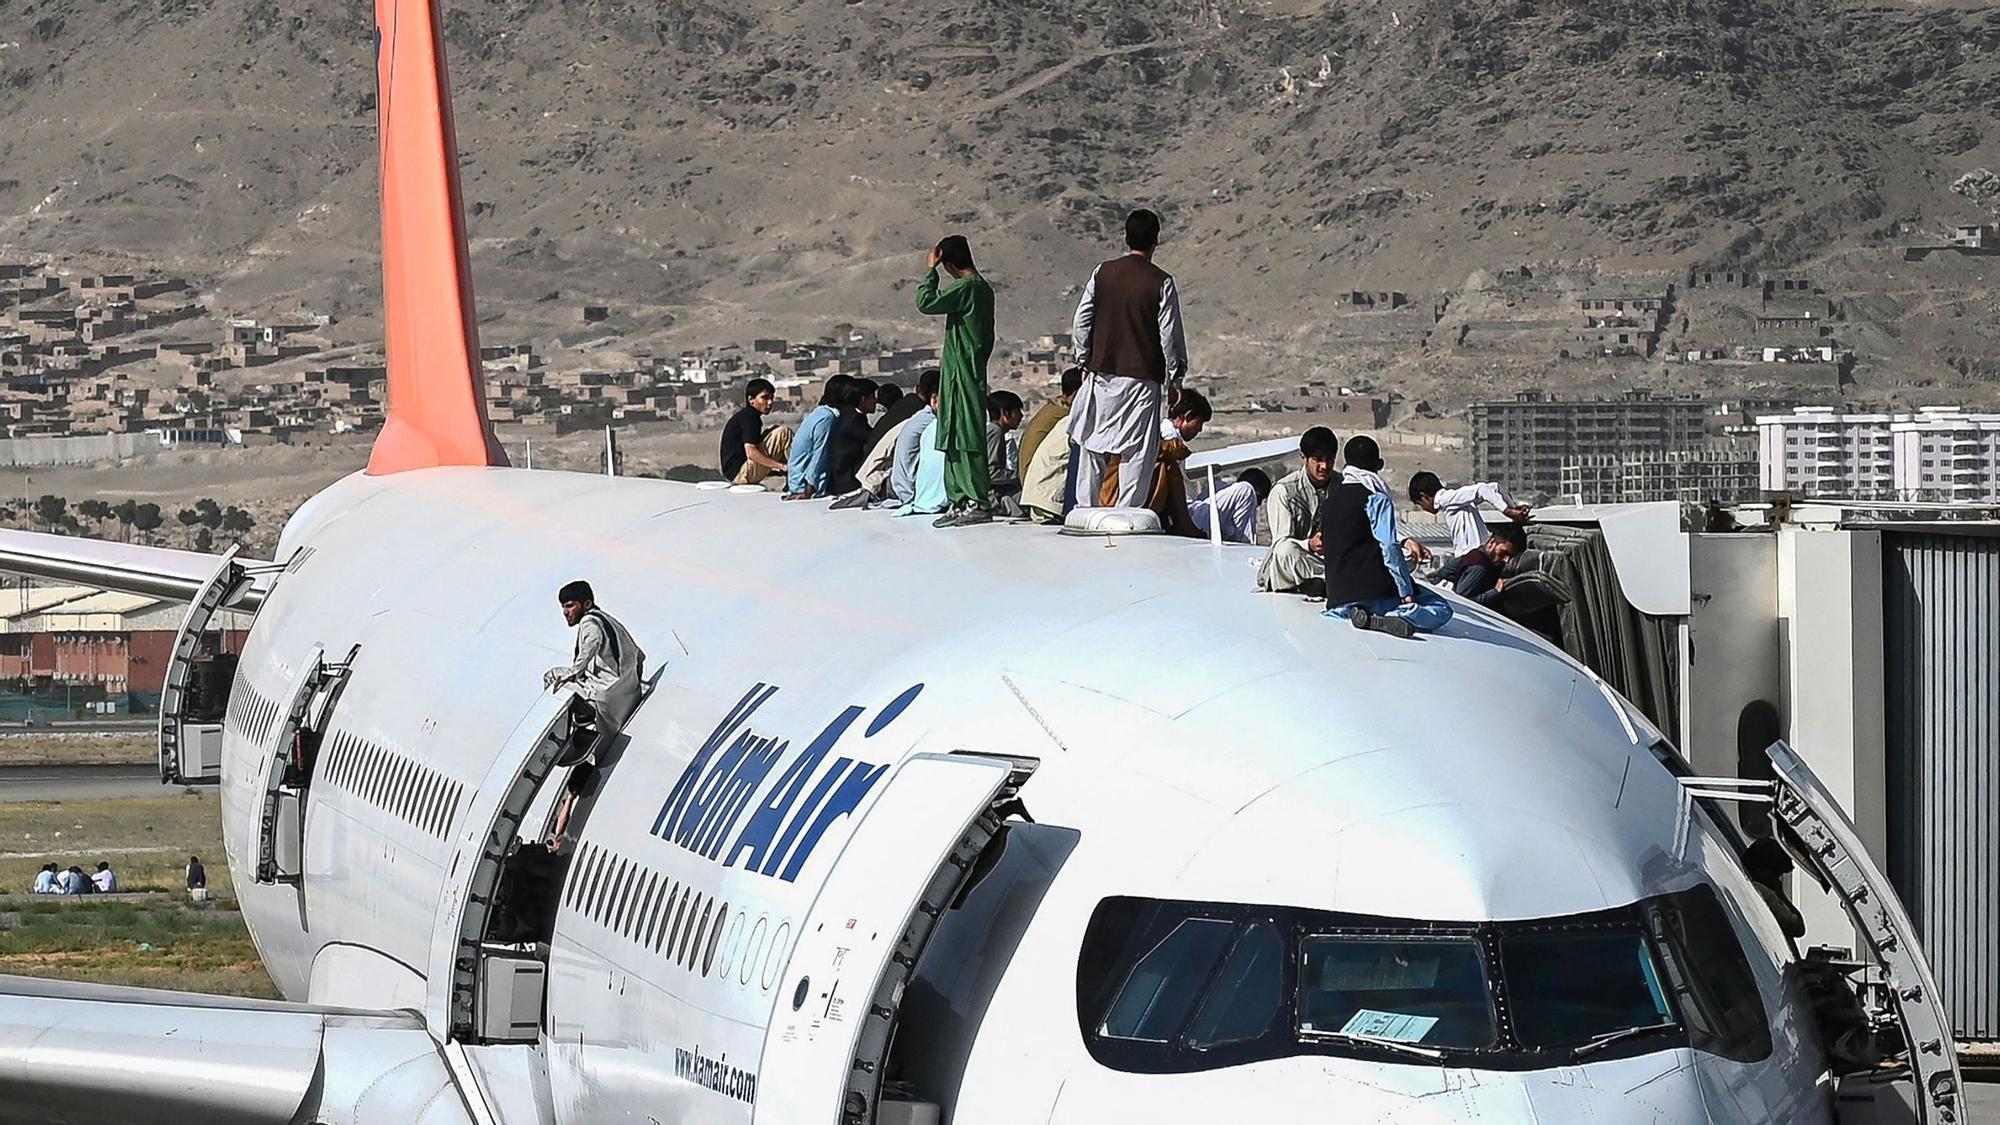 Afganos tratando de salir del país.